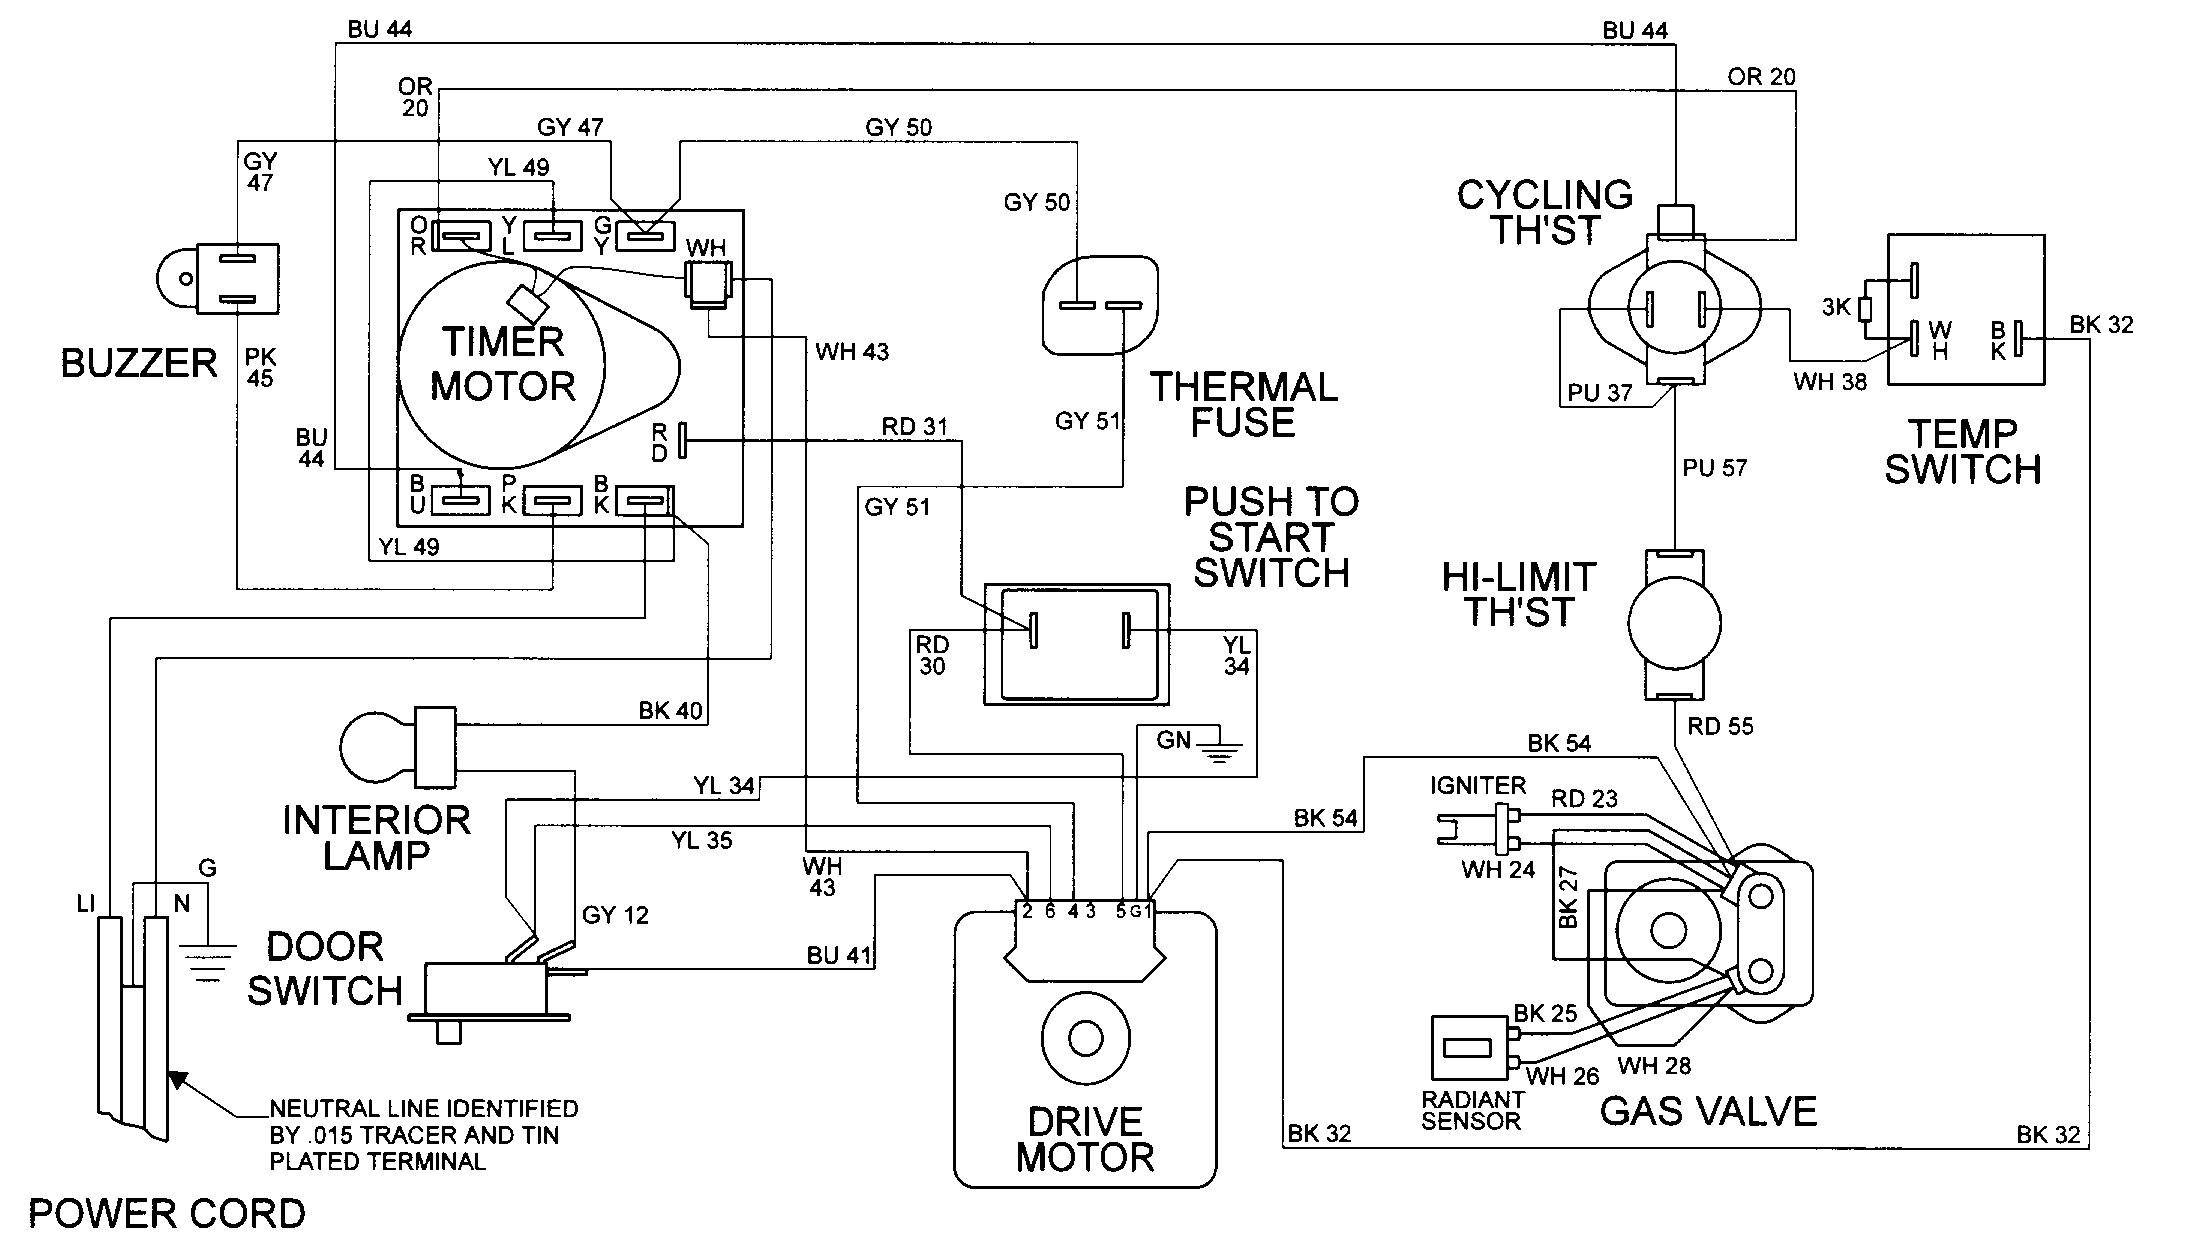 maytag dryer diagrams wiring diagram insidemaytag dryer diagrams wiring diagram info maytag dryer wiring diagrams maytag